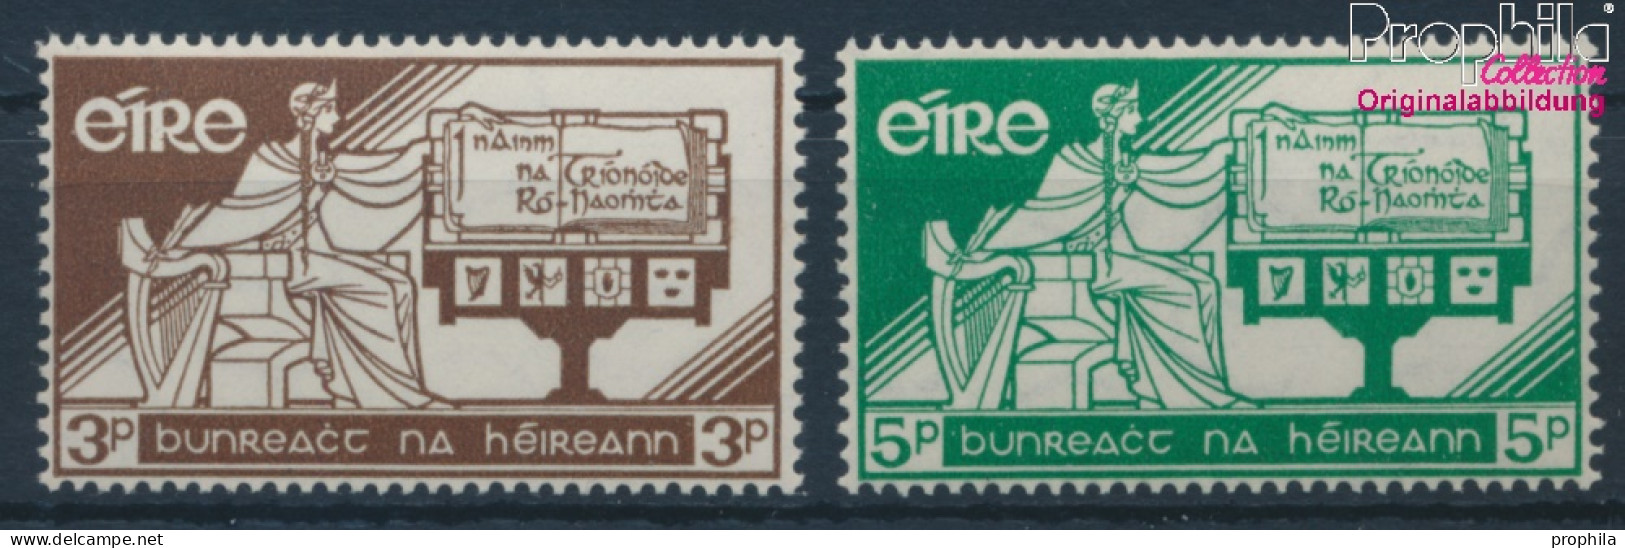 Irland 140-141 (kompl.Ausg.) Postfrisch 1958 Verfassung (10398346 - Ongebruikt